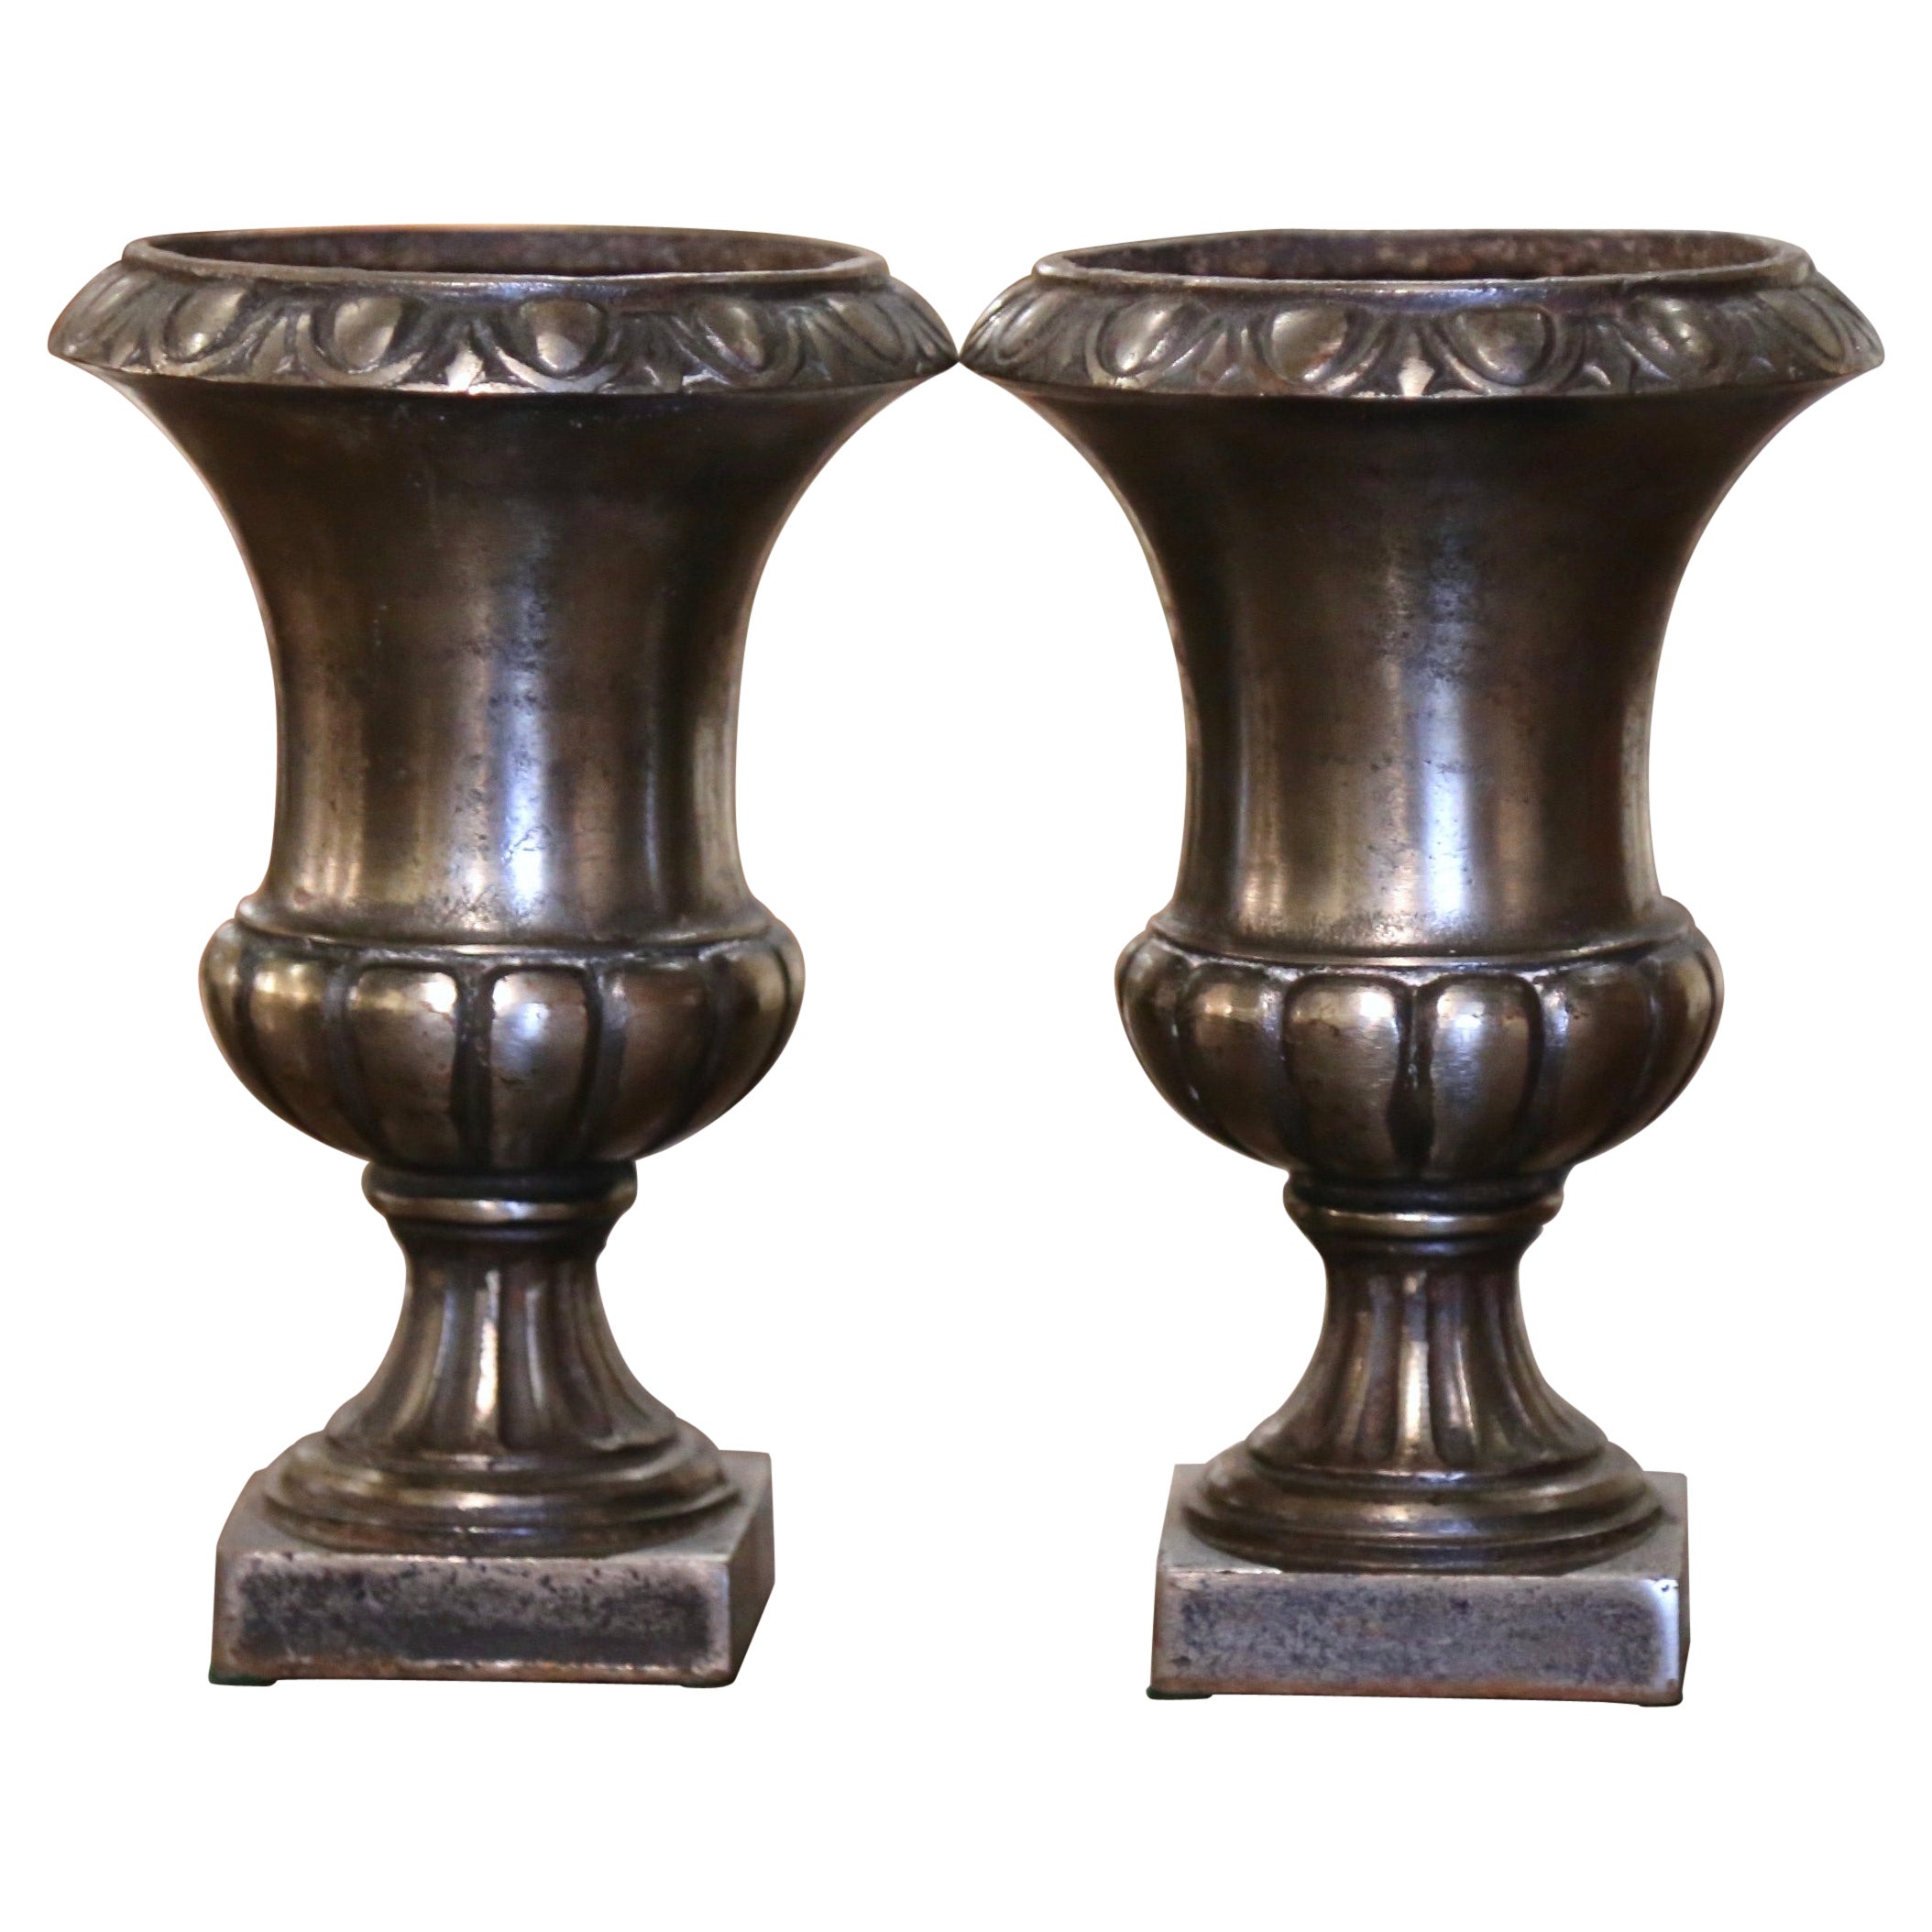 Paire d'urnes néoclassiques françaises en fer poli en forme de campane du 19ème siècle